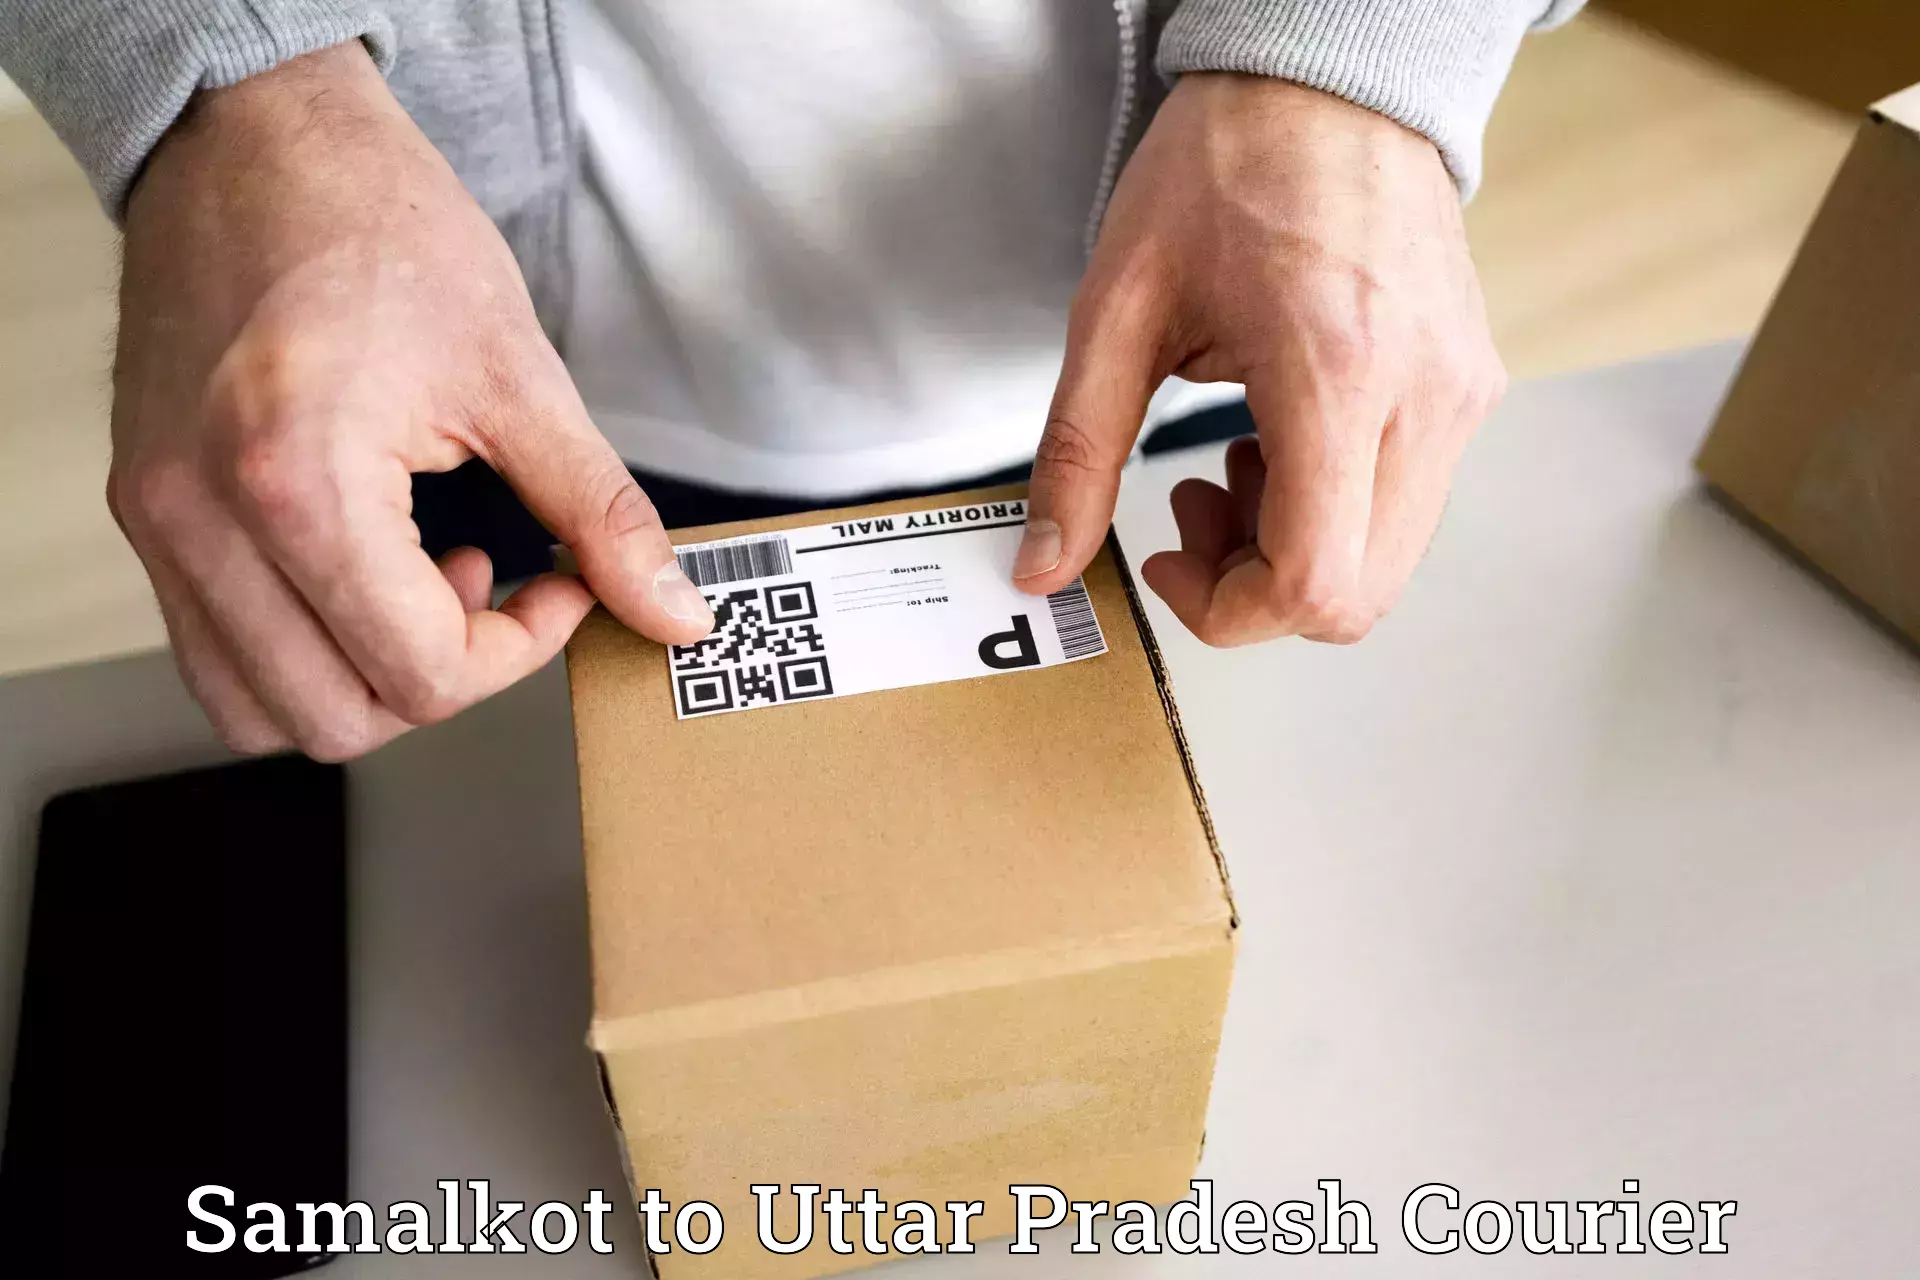 Specialized shipment handling Samalkot to Uttar Pradesh